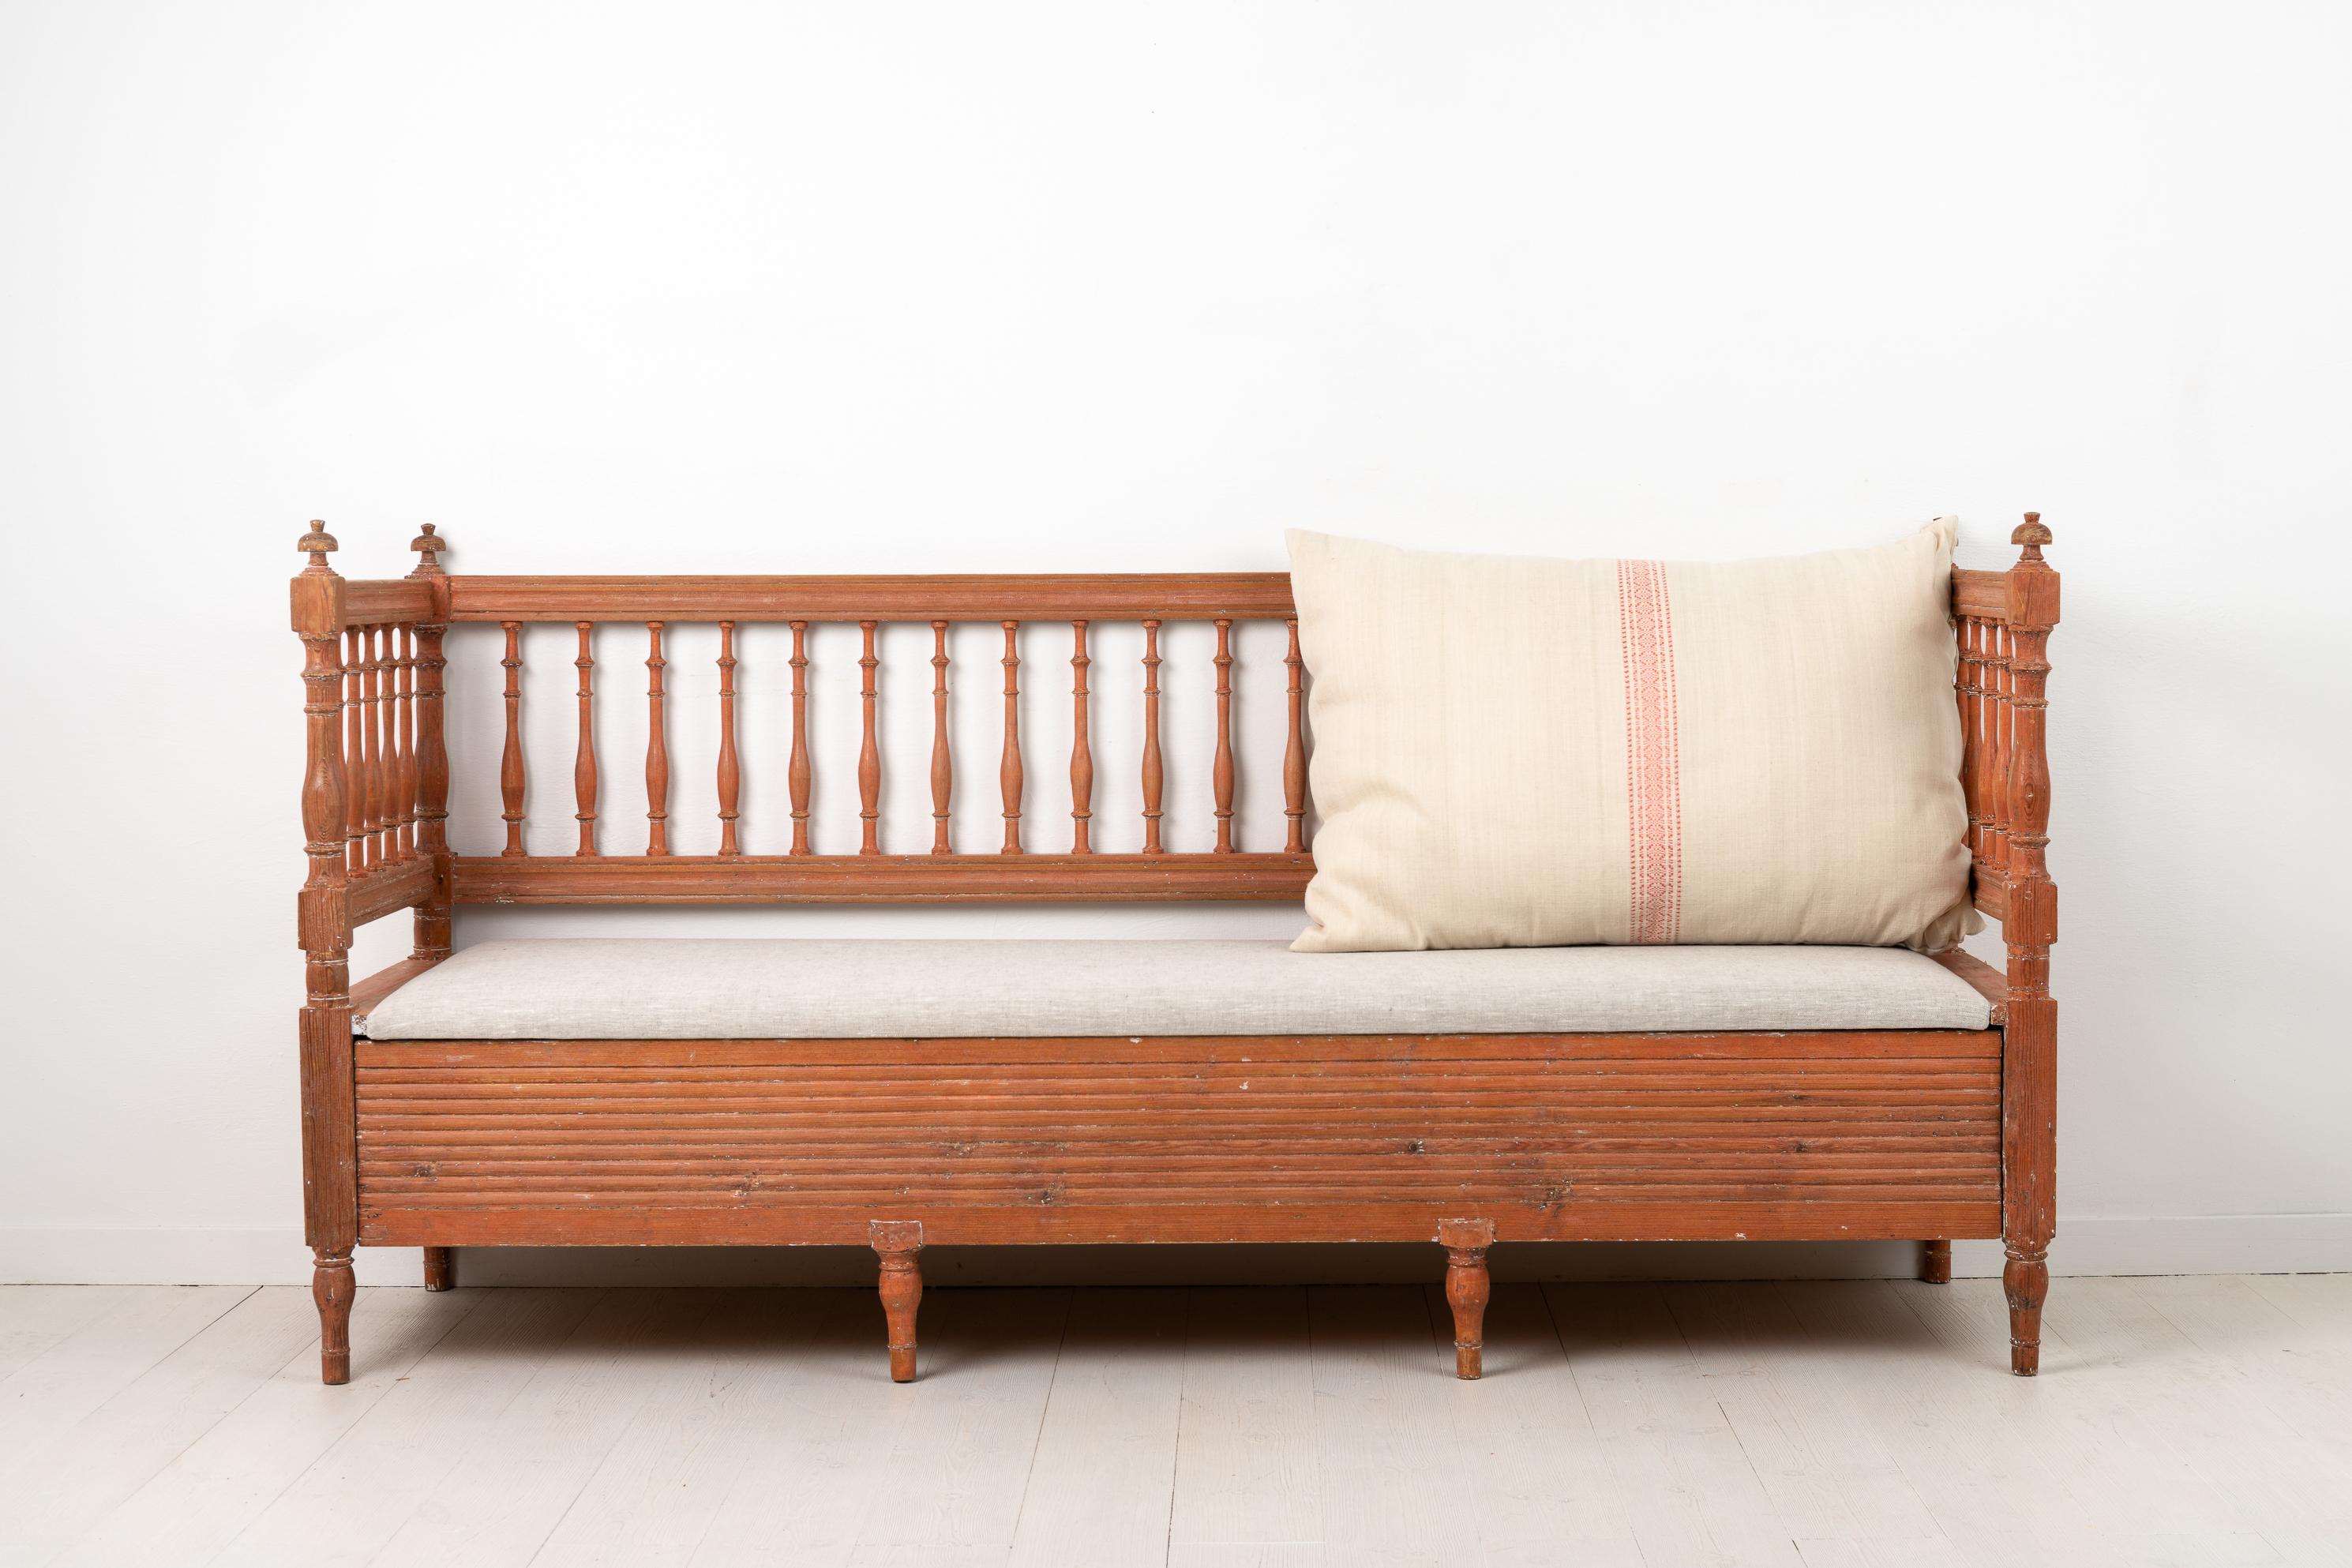 Nordschwedisches Sofa im gustavianischen Landhausstil aus Kiefer, das seine ursprüngliche, abgeschabte Farbe zeigt. Dieses Sofa aus dem frühen 19. Jahrhundert, etwa zwischen 1800 und 1810, ist ein Beispiel für die Zweckmäßigkeit des schwedischen